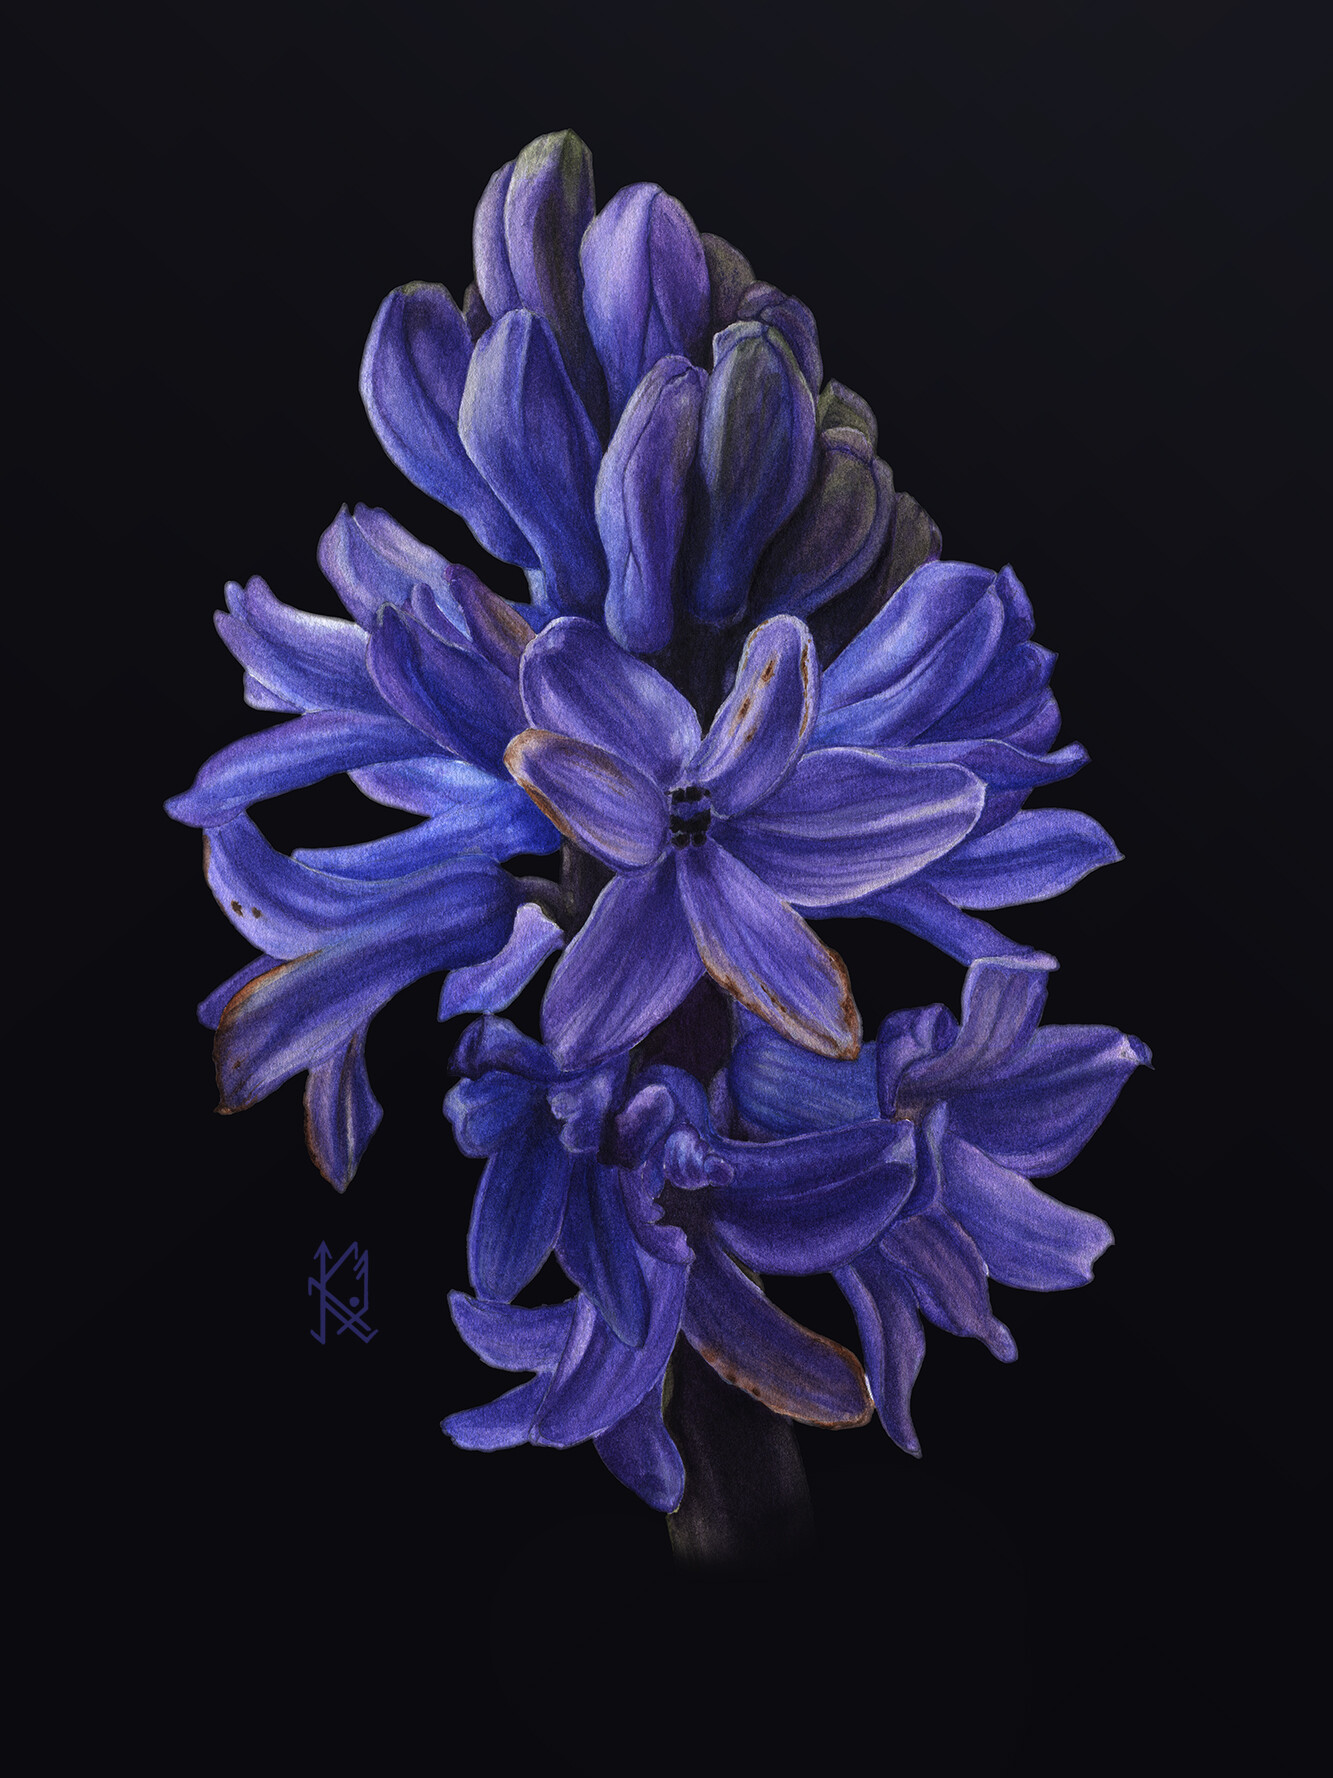 Hyacinth tím đậm là loại hoa rất được yêu thích bởi vẻ đẹp kiêu sa và mùi thơm quyến rũ. Hãy chiêm ngưỡng bức ảnh của chúng tôi, nơi mà vẻ đẹp đầy cuốn hút của loài hoa này được tái hiện một cách tuyệt vời.